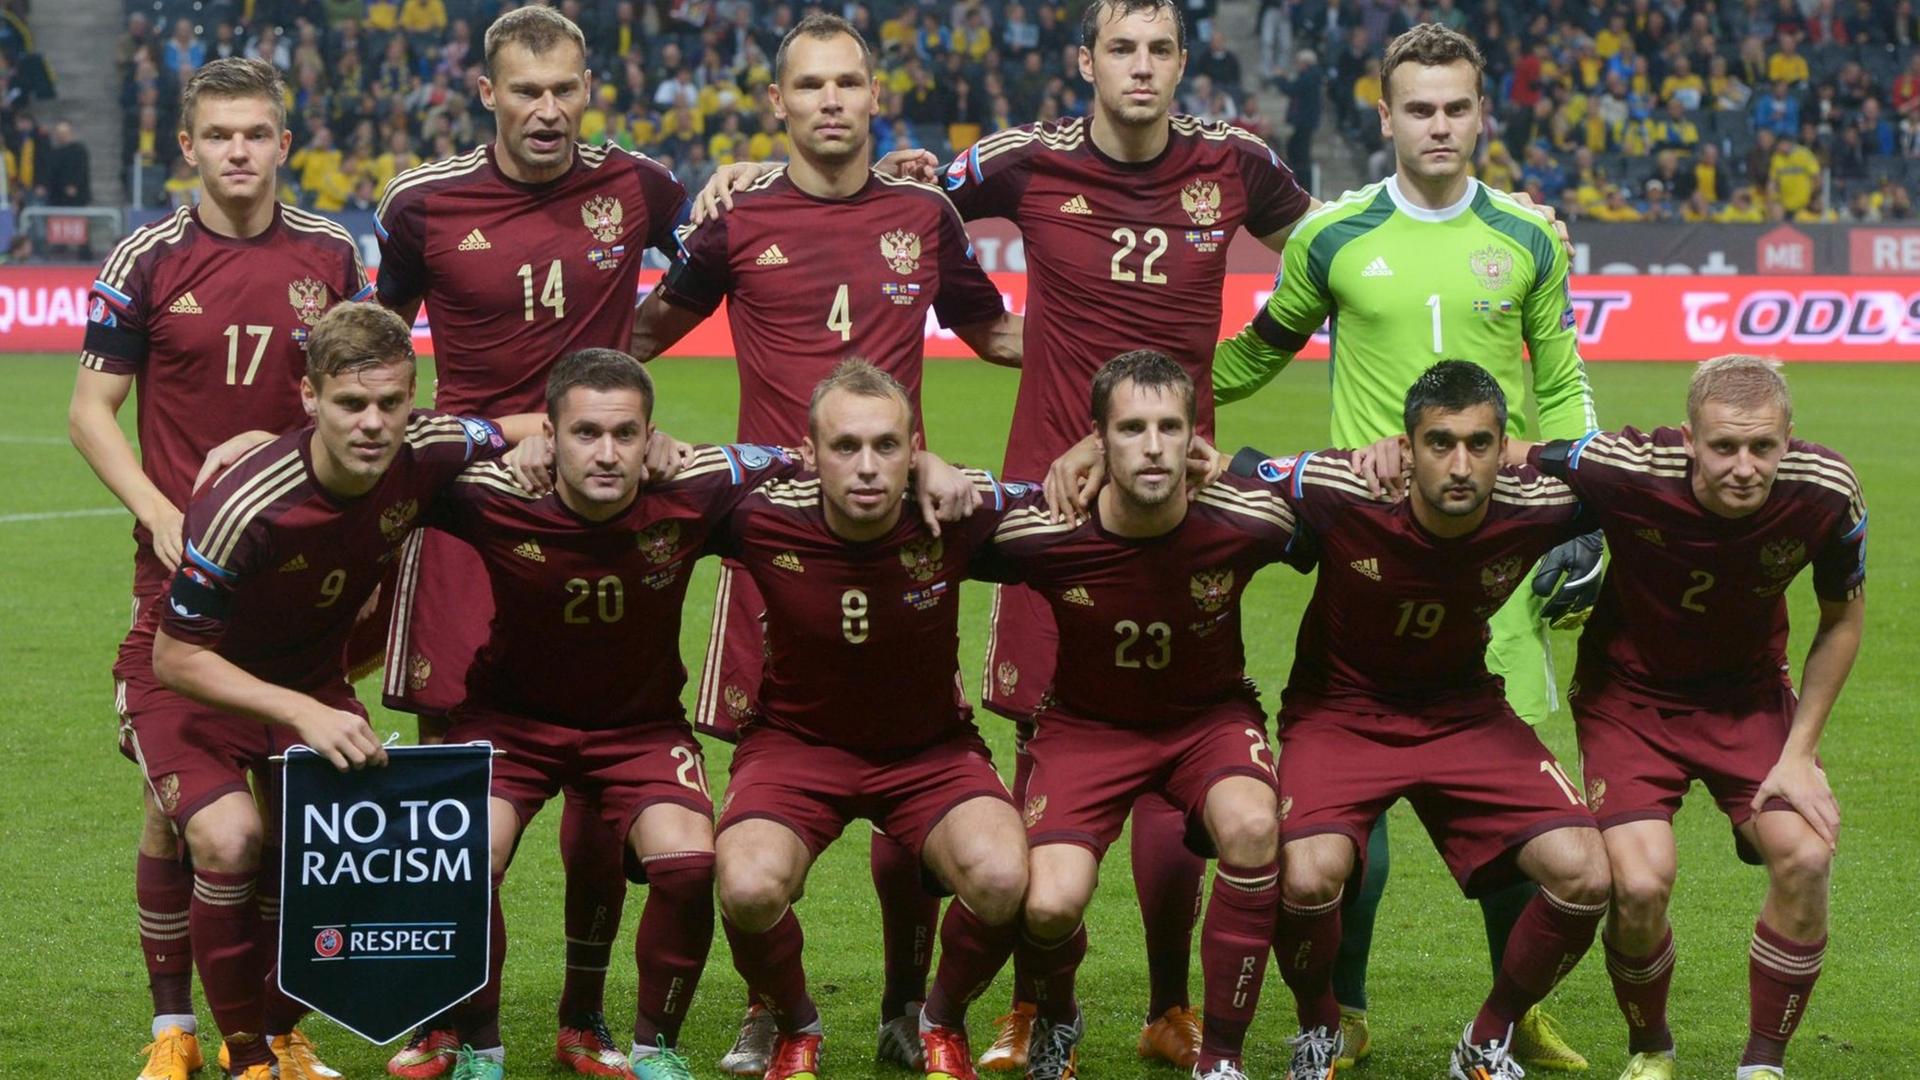 Gruppenbild der russischen Fußball-Nationalmannschaft vor der WM 2014